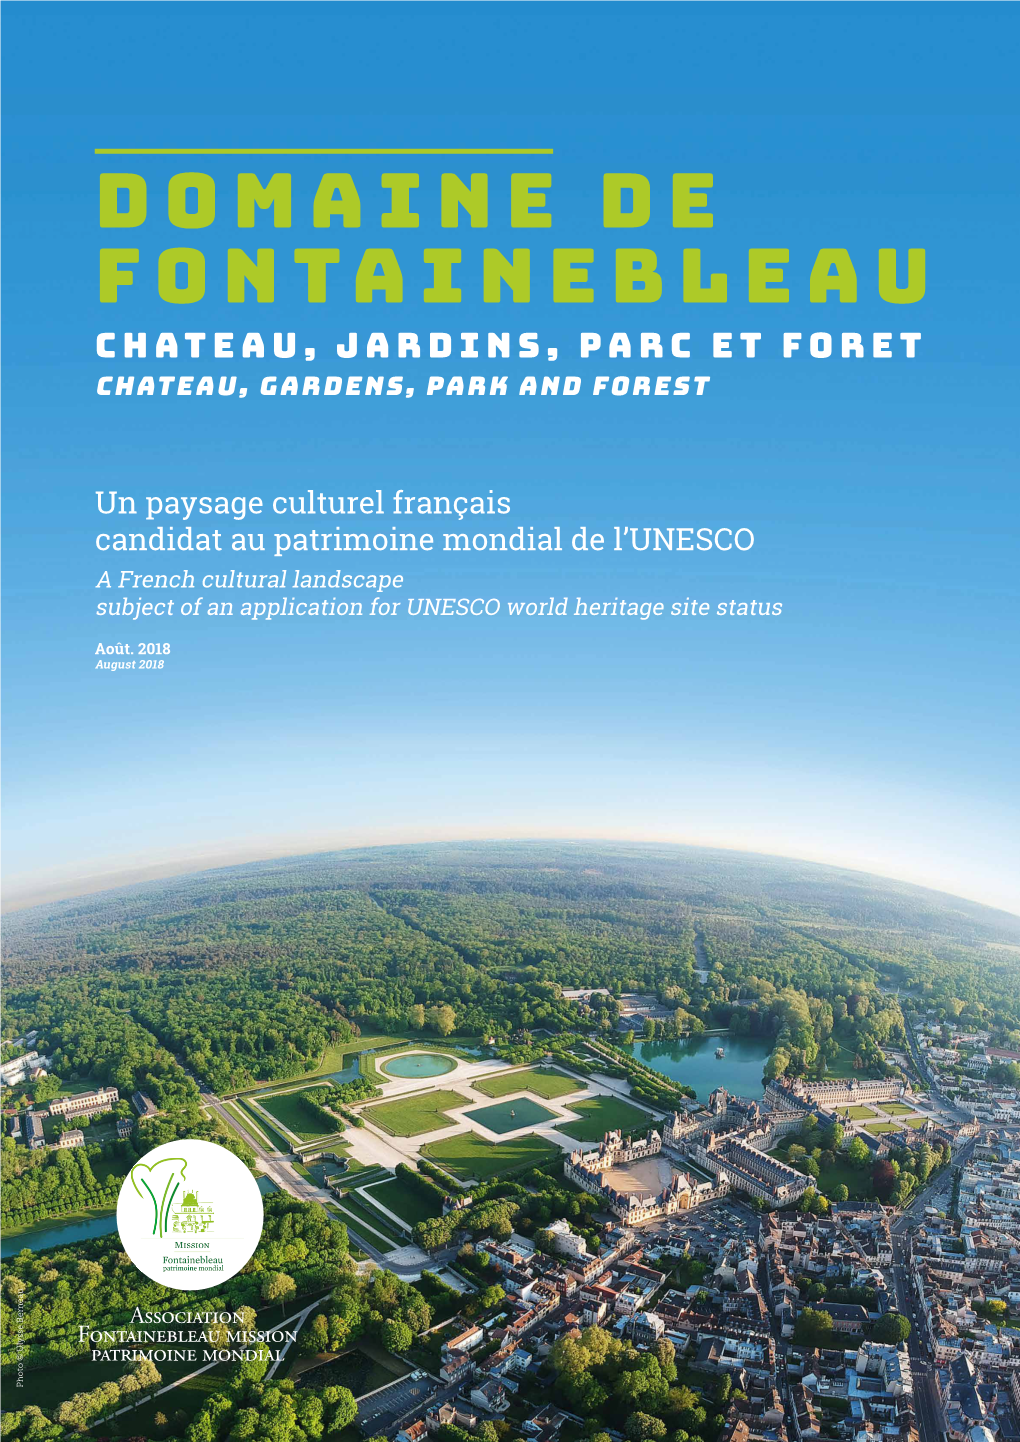 Domaine De Fontainebleau Chateau, Jardins, Parc Et Foret Chateau, Gardens, Park and Forest